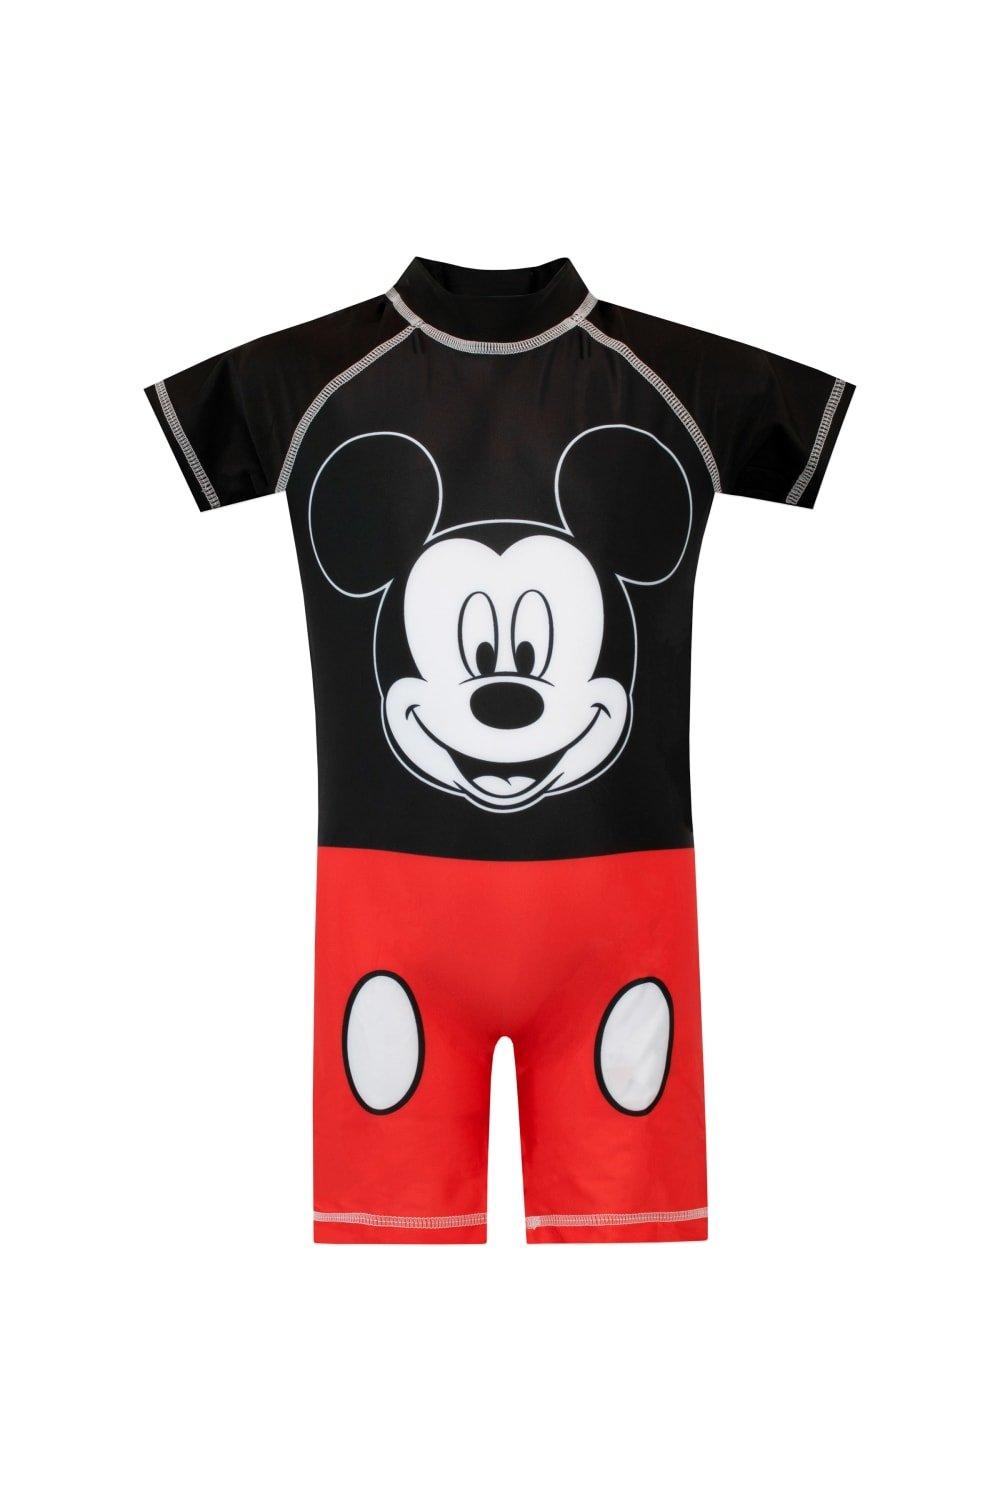 Костюм Микки Мауса для серфинга Disney, красный оригинальная футболка с микки маусом для мальчиков disney красный